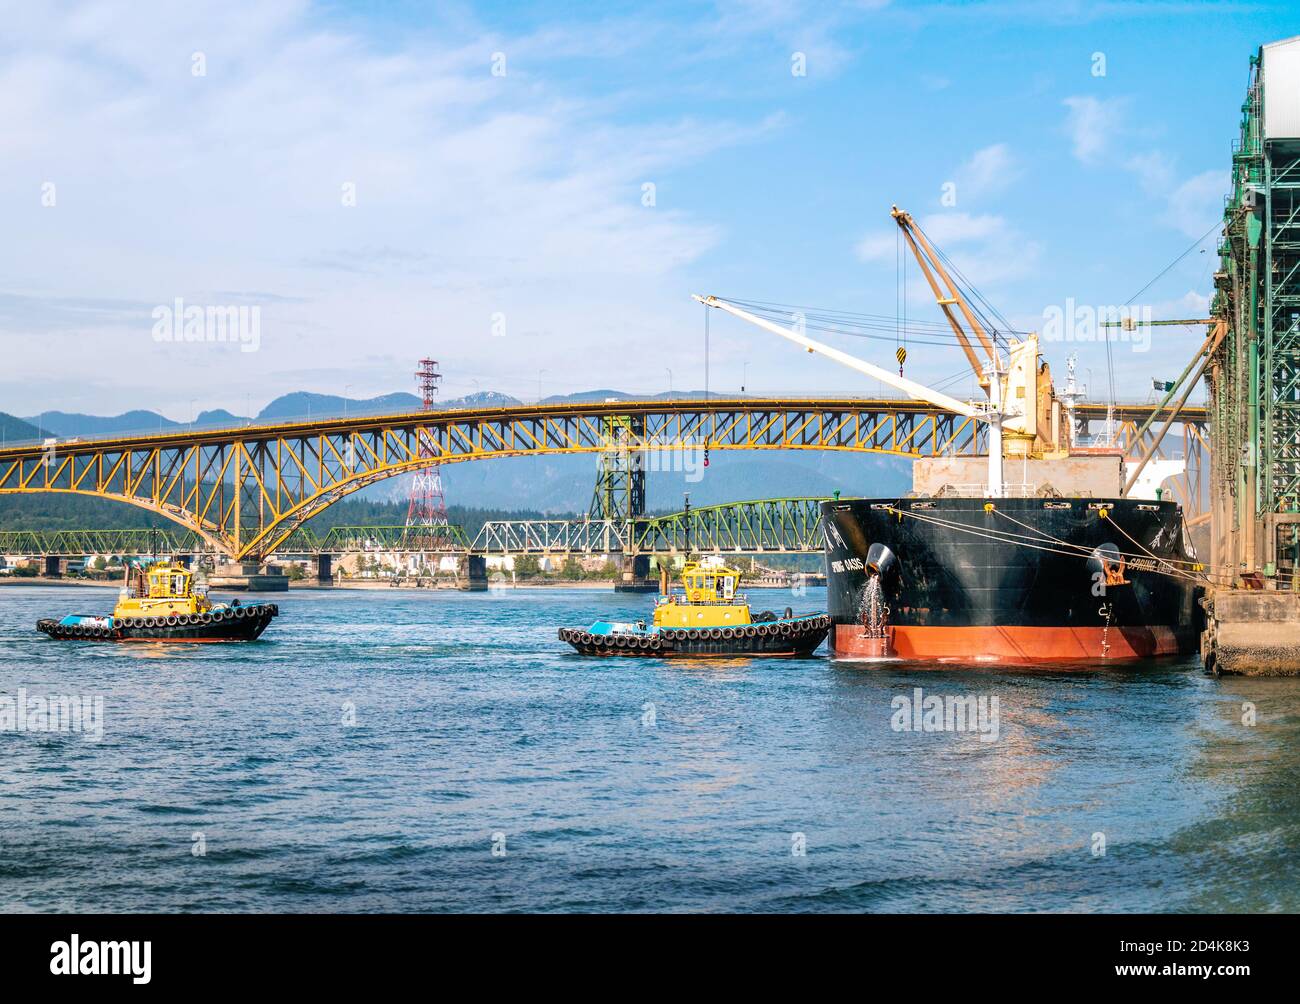 VANCOUVER, BC / CANADA - mai 29, 2020 - due rimorchiatori che si avvicinano ad una petroliera attraccata presso un terminal dal porto di Vancouver. Foto Stock